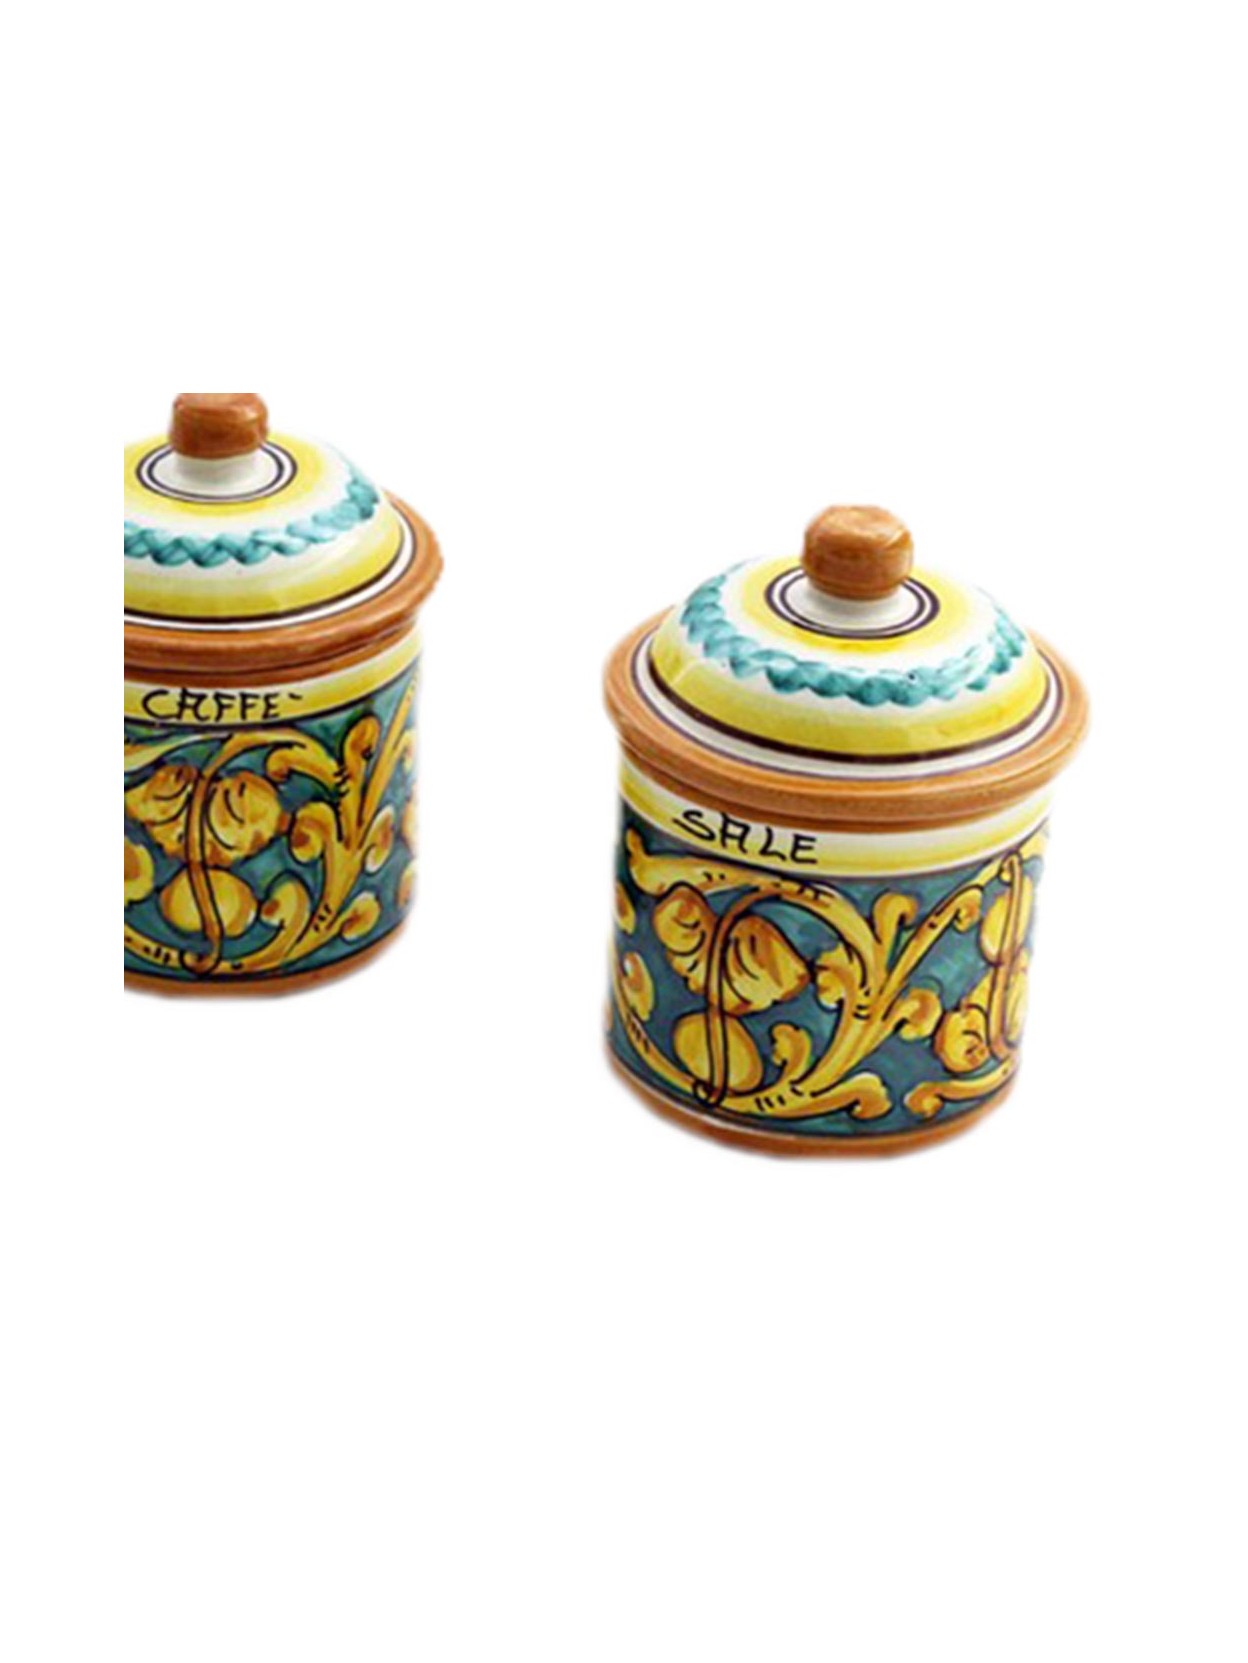 Tris caffe-zucchero-sale small – Sicilia ceramics